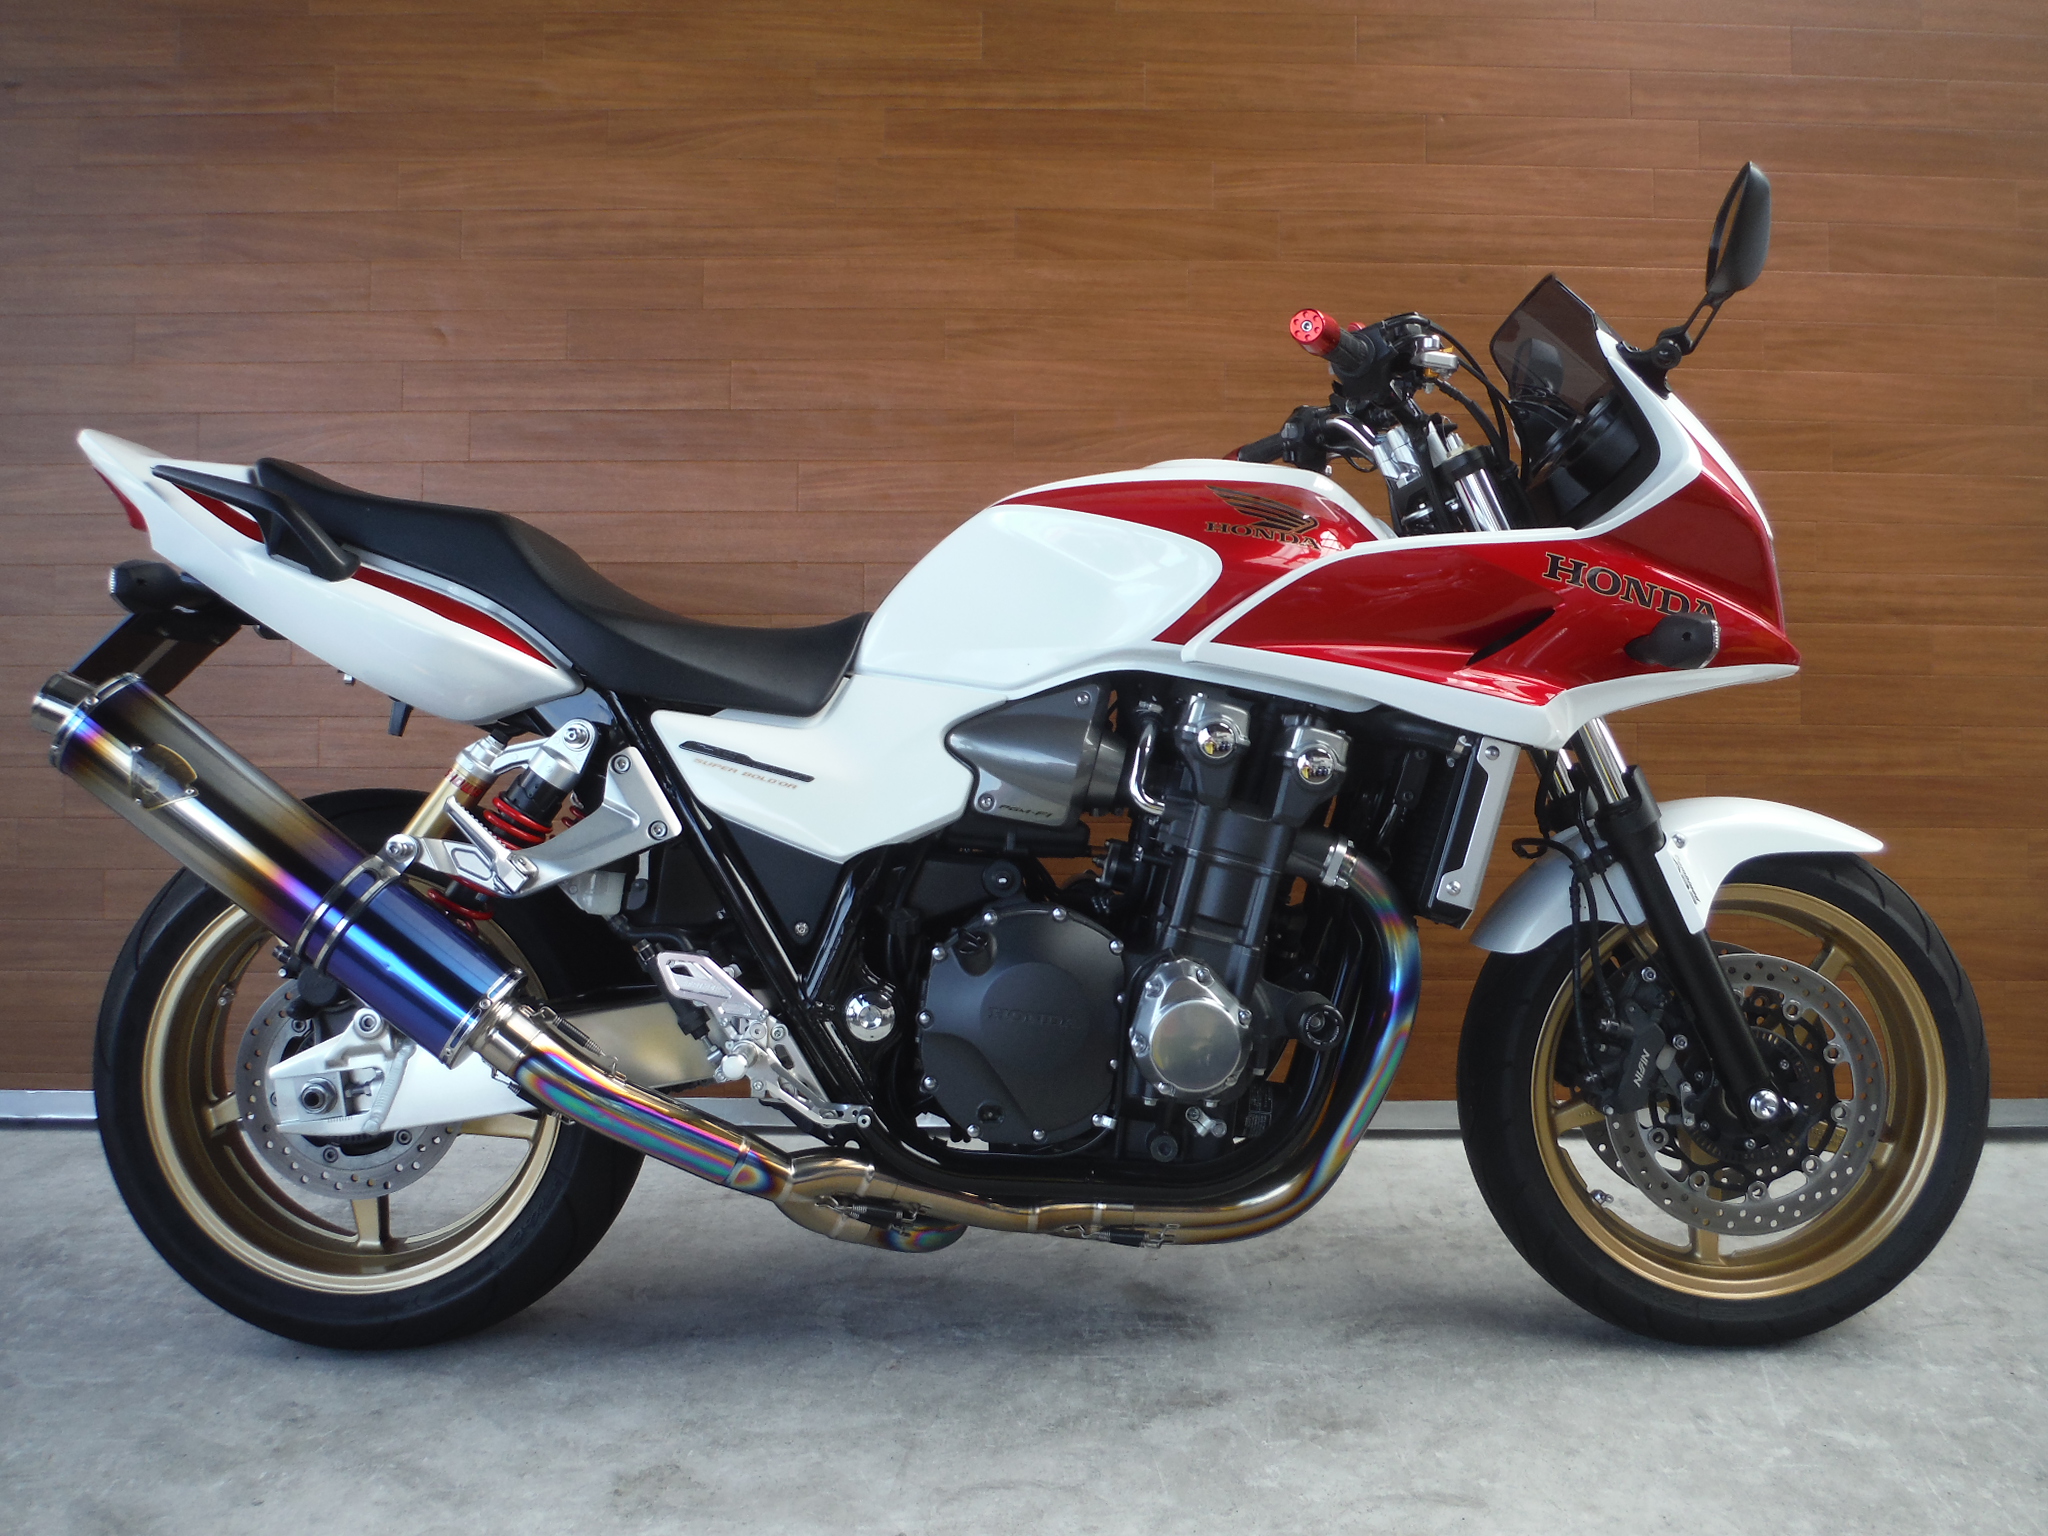 熊本中古車バイク情報 ホンダ Cb1300sb Abs 1300 11年モデル 赤白 熊本のバイクショップ アール バイクの新車 中古車 販売や買取 レンタルバイクのことならおまかせください